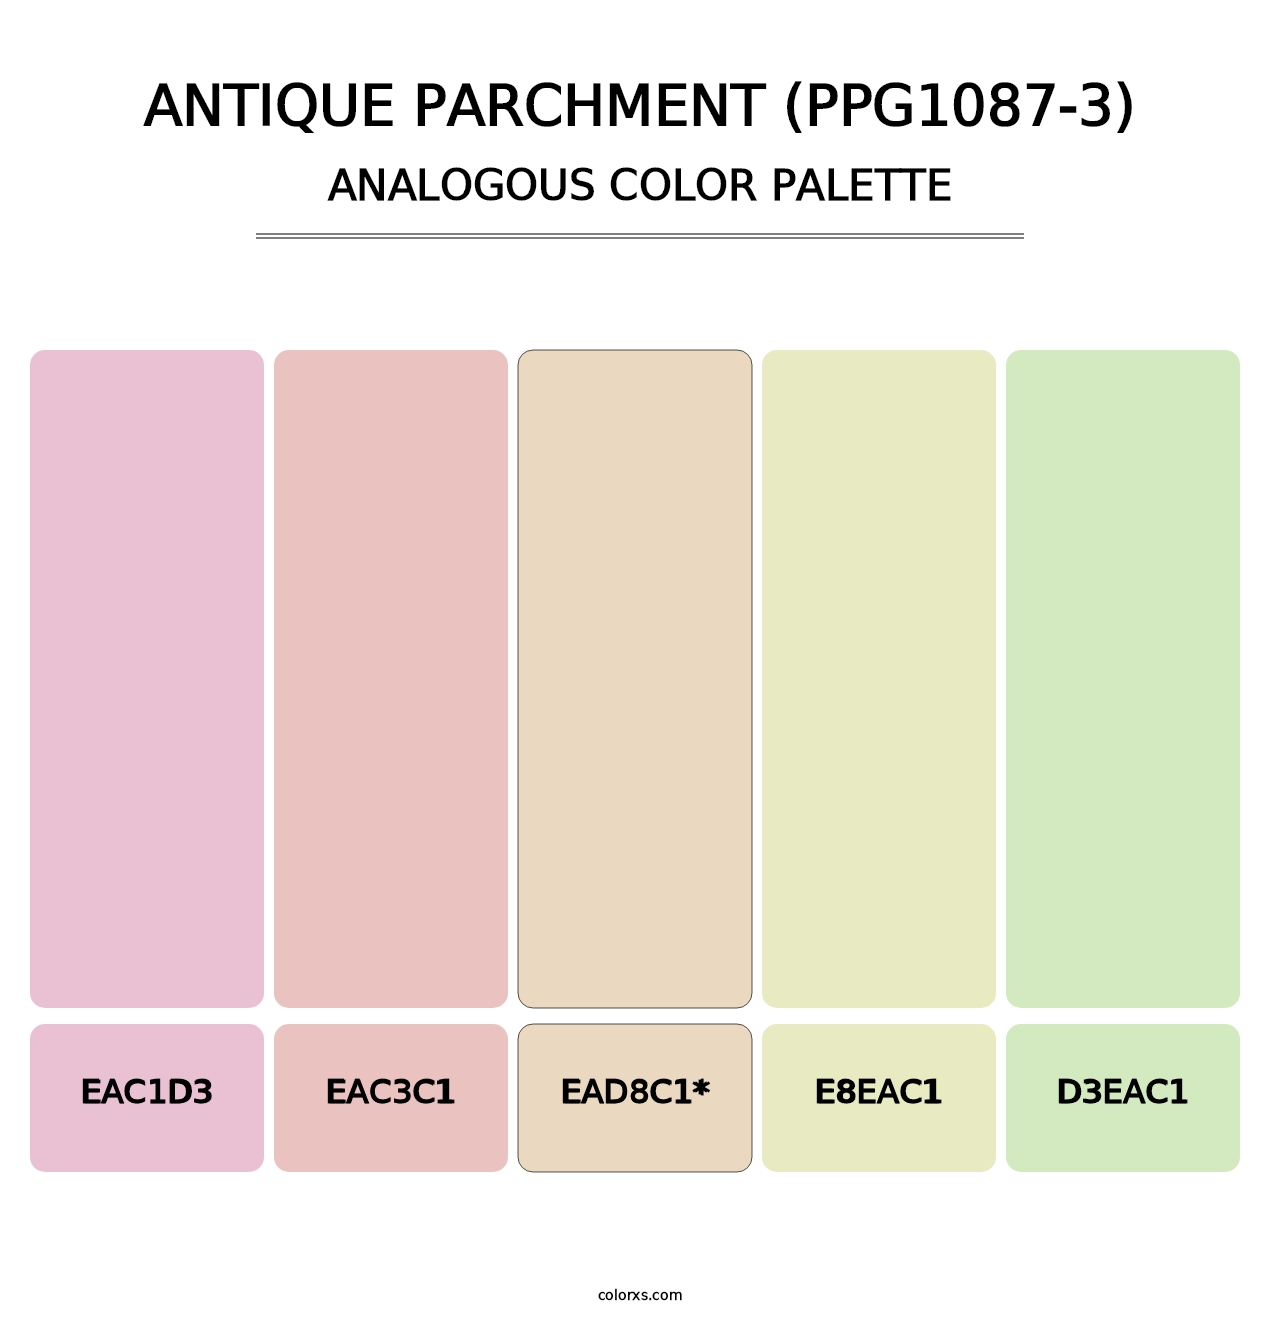 Antique Parchment (PPG1087-3) - Analogous Color Palette